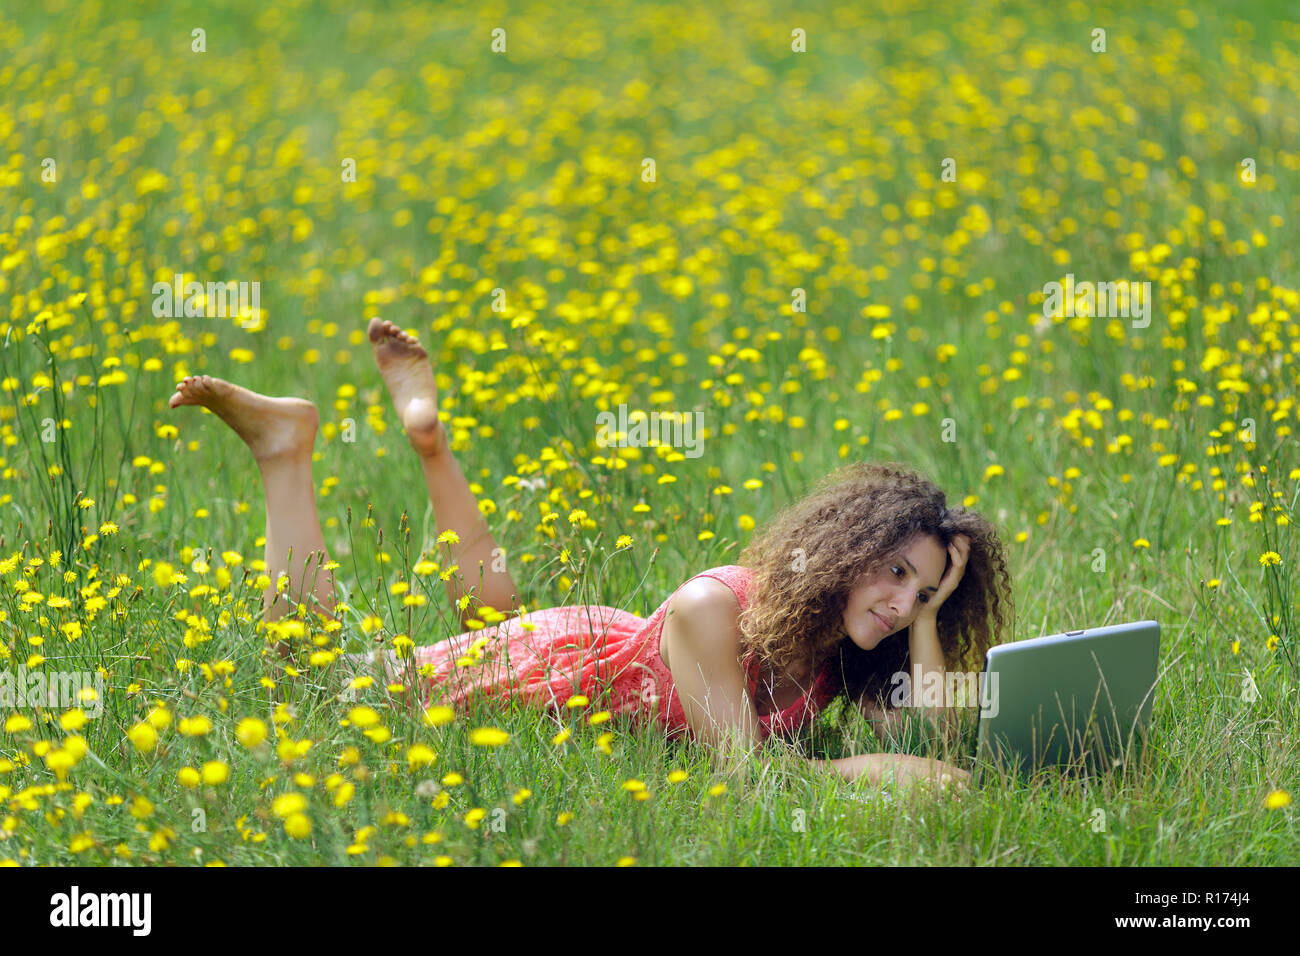 Linda mujer joven con cabello rizado acostado leyendo un libro en un wildflower meadow lleno de coloridas flores amarillas como ella se relaja en la tranquilidad Foto de stock